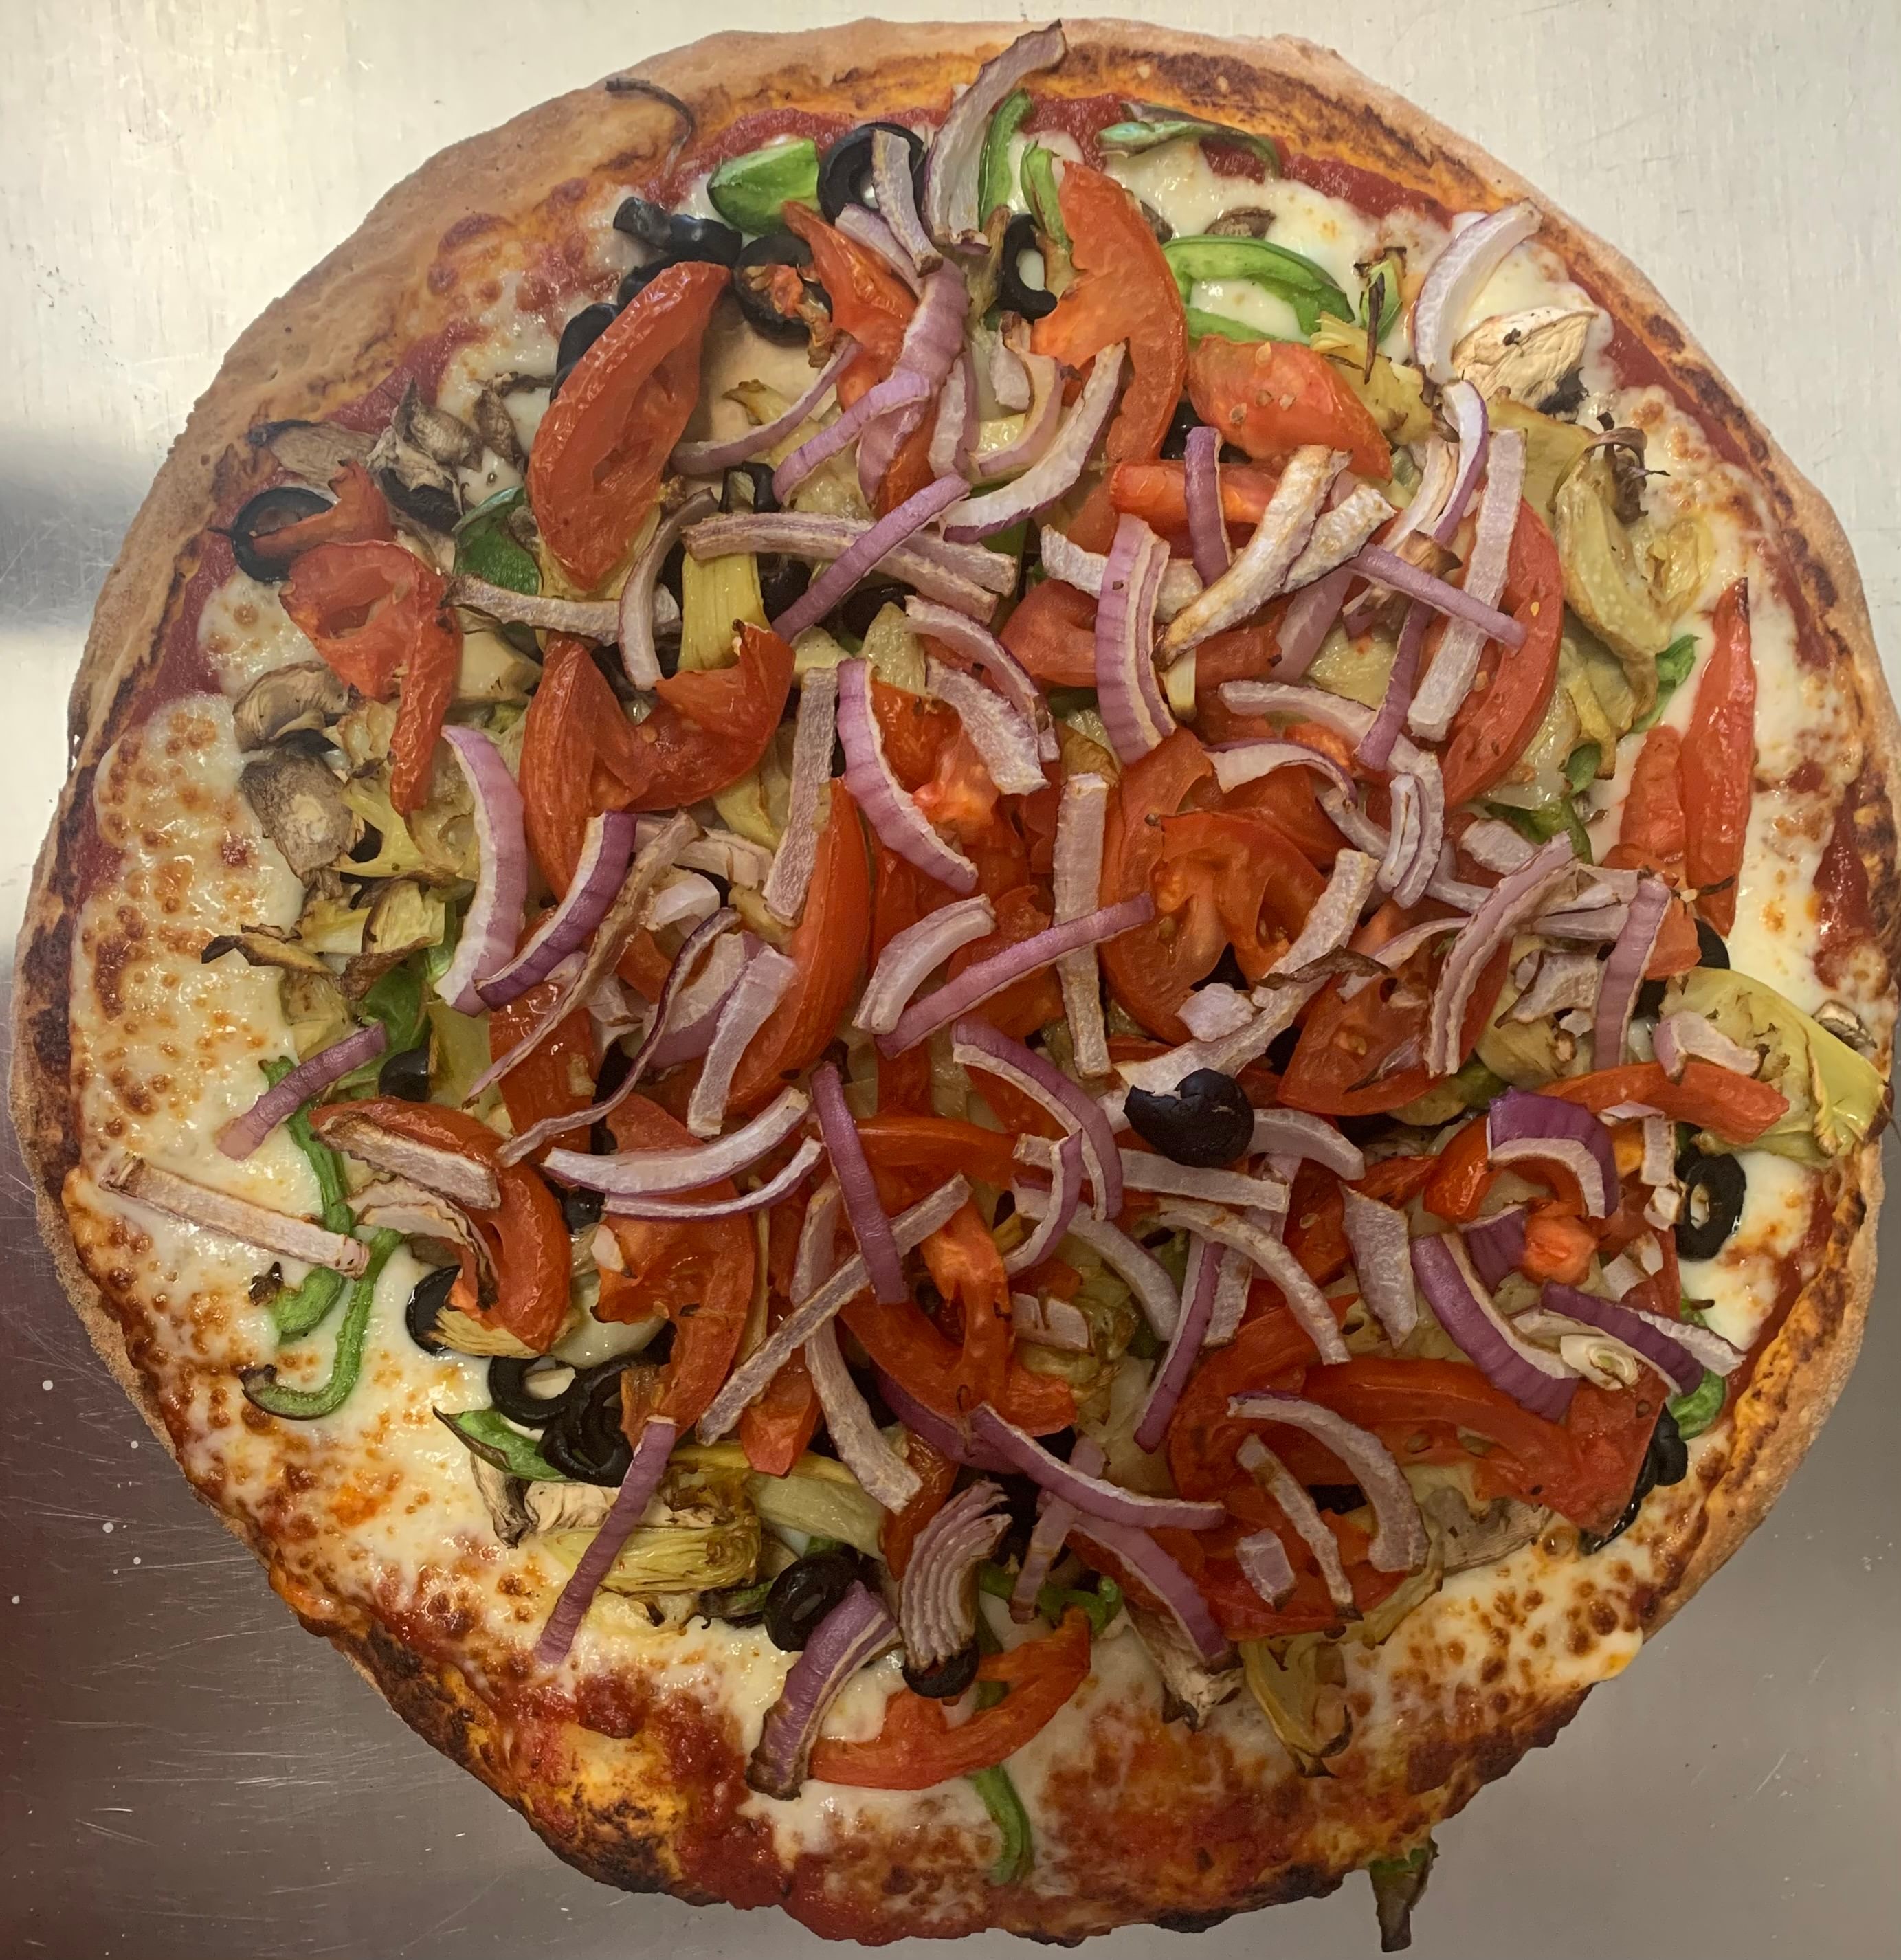 Veggie Delight Pizza (12" Medium)